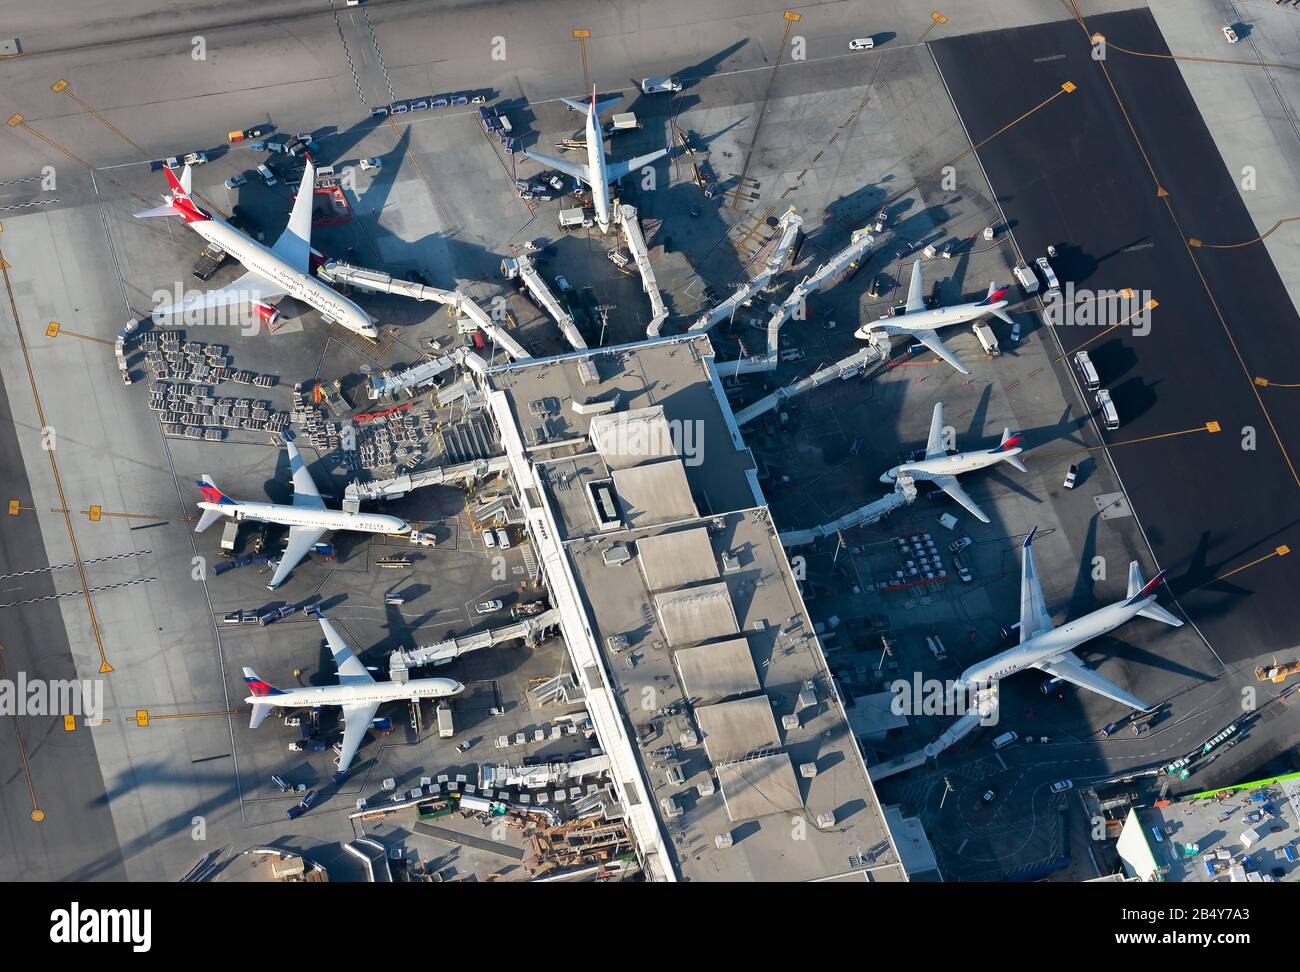 Des avions Delta et Virgin Atlantic stationnés au terminal 2 de l'aéroport de LAX. Les compagnies aériennes ont un partenariat de coentreprise. Aéroport International De Los Angeles. Banque D'Images